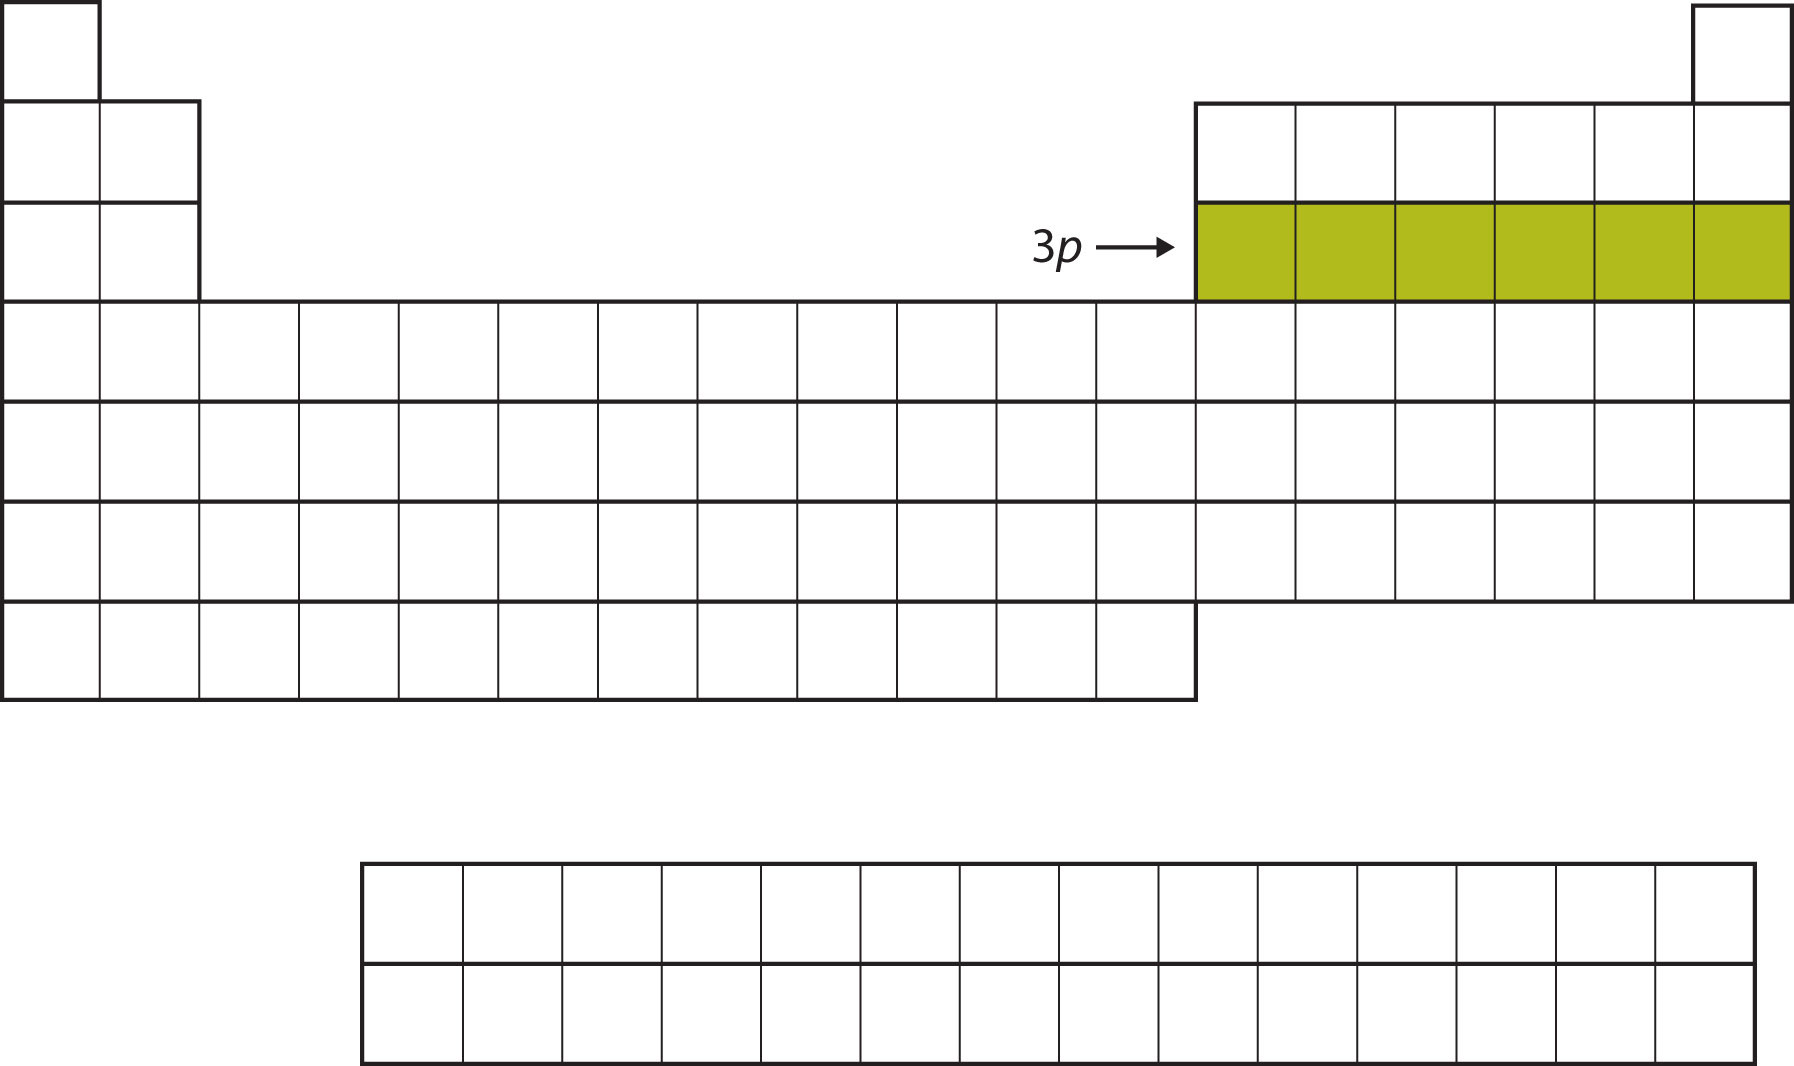 Tabla periódica vacía, con 6 cuadrados en la tercera fila a la derecha rellenados en un color verde mostaza.